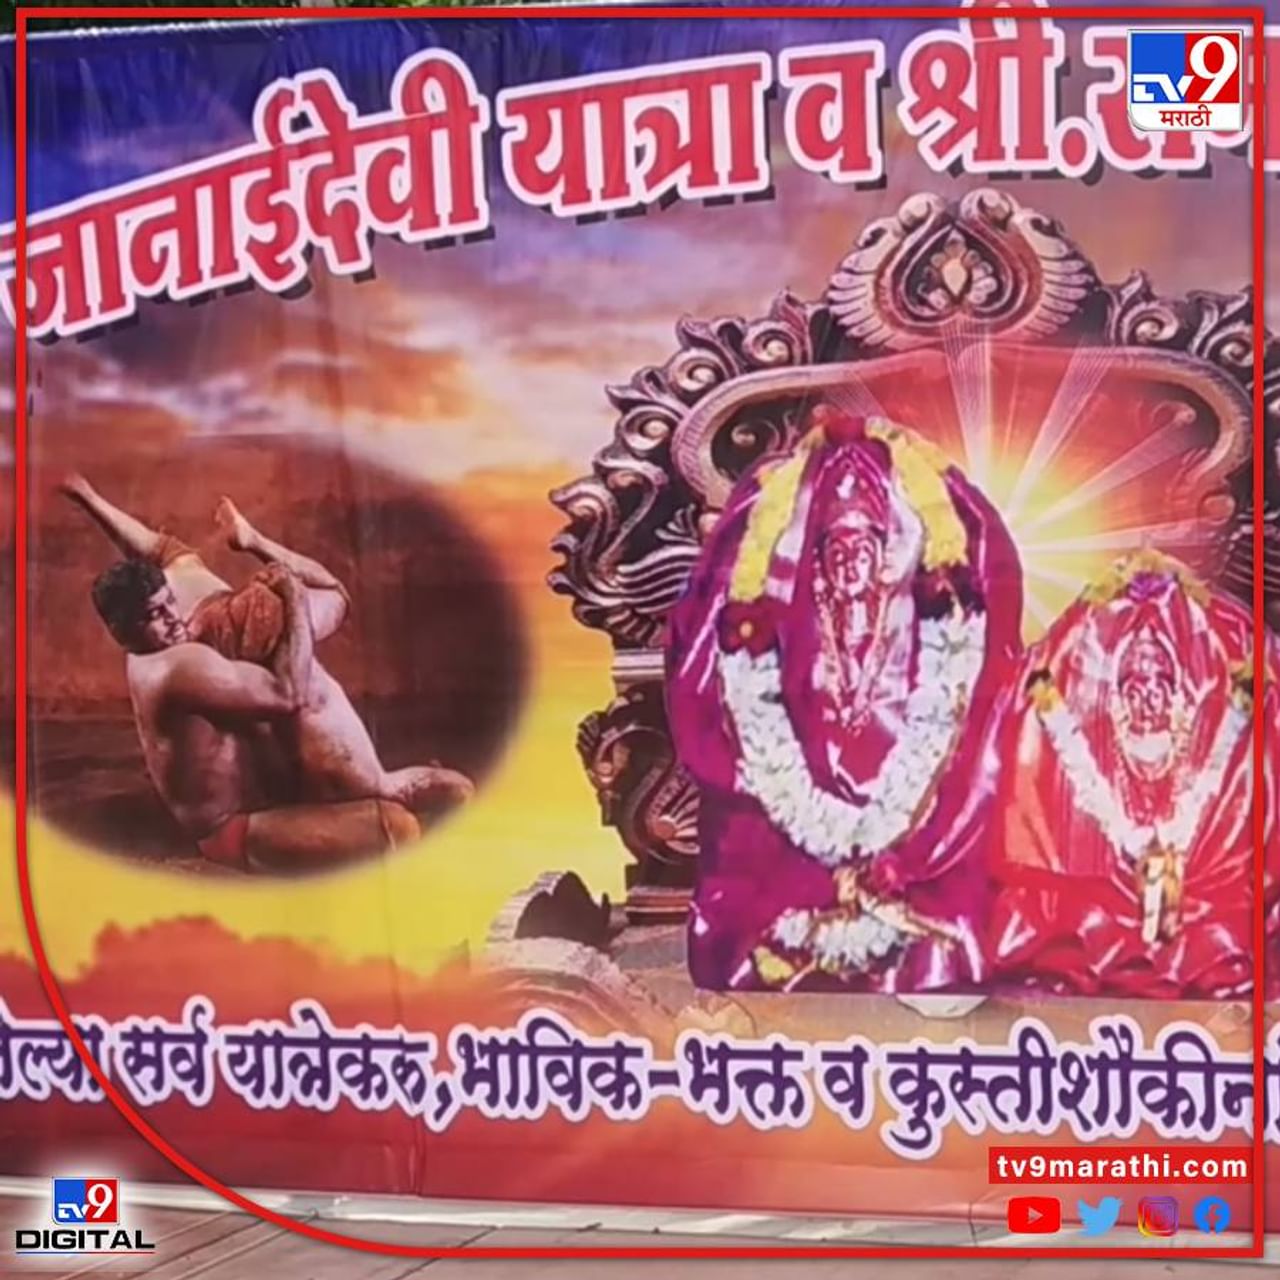 हिंदू धर्मग्रंथांमध्ये मर्यादा पुरुषोत्तम भगवान राम (Ram) यांचा जन्म चैत्र महिन्यातील नवमीला झाला होता असे संदर्भ मिळतात. म्हणूनच चैत्र महिन्यातील शुक्ल पक्षाची नवमीला हा हिंदूंचा प्रमुख उत्सव राम नवमी म्हणून साजरा केला जातो.